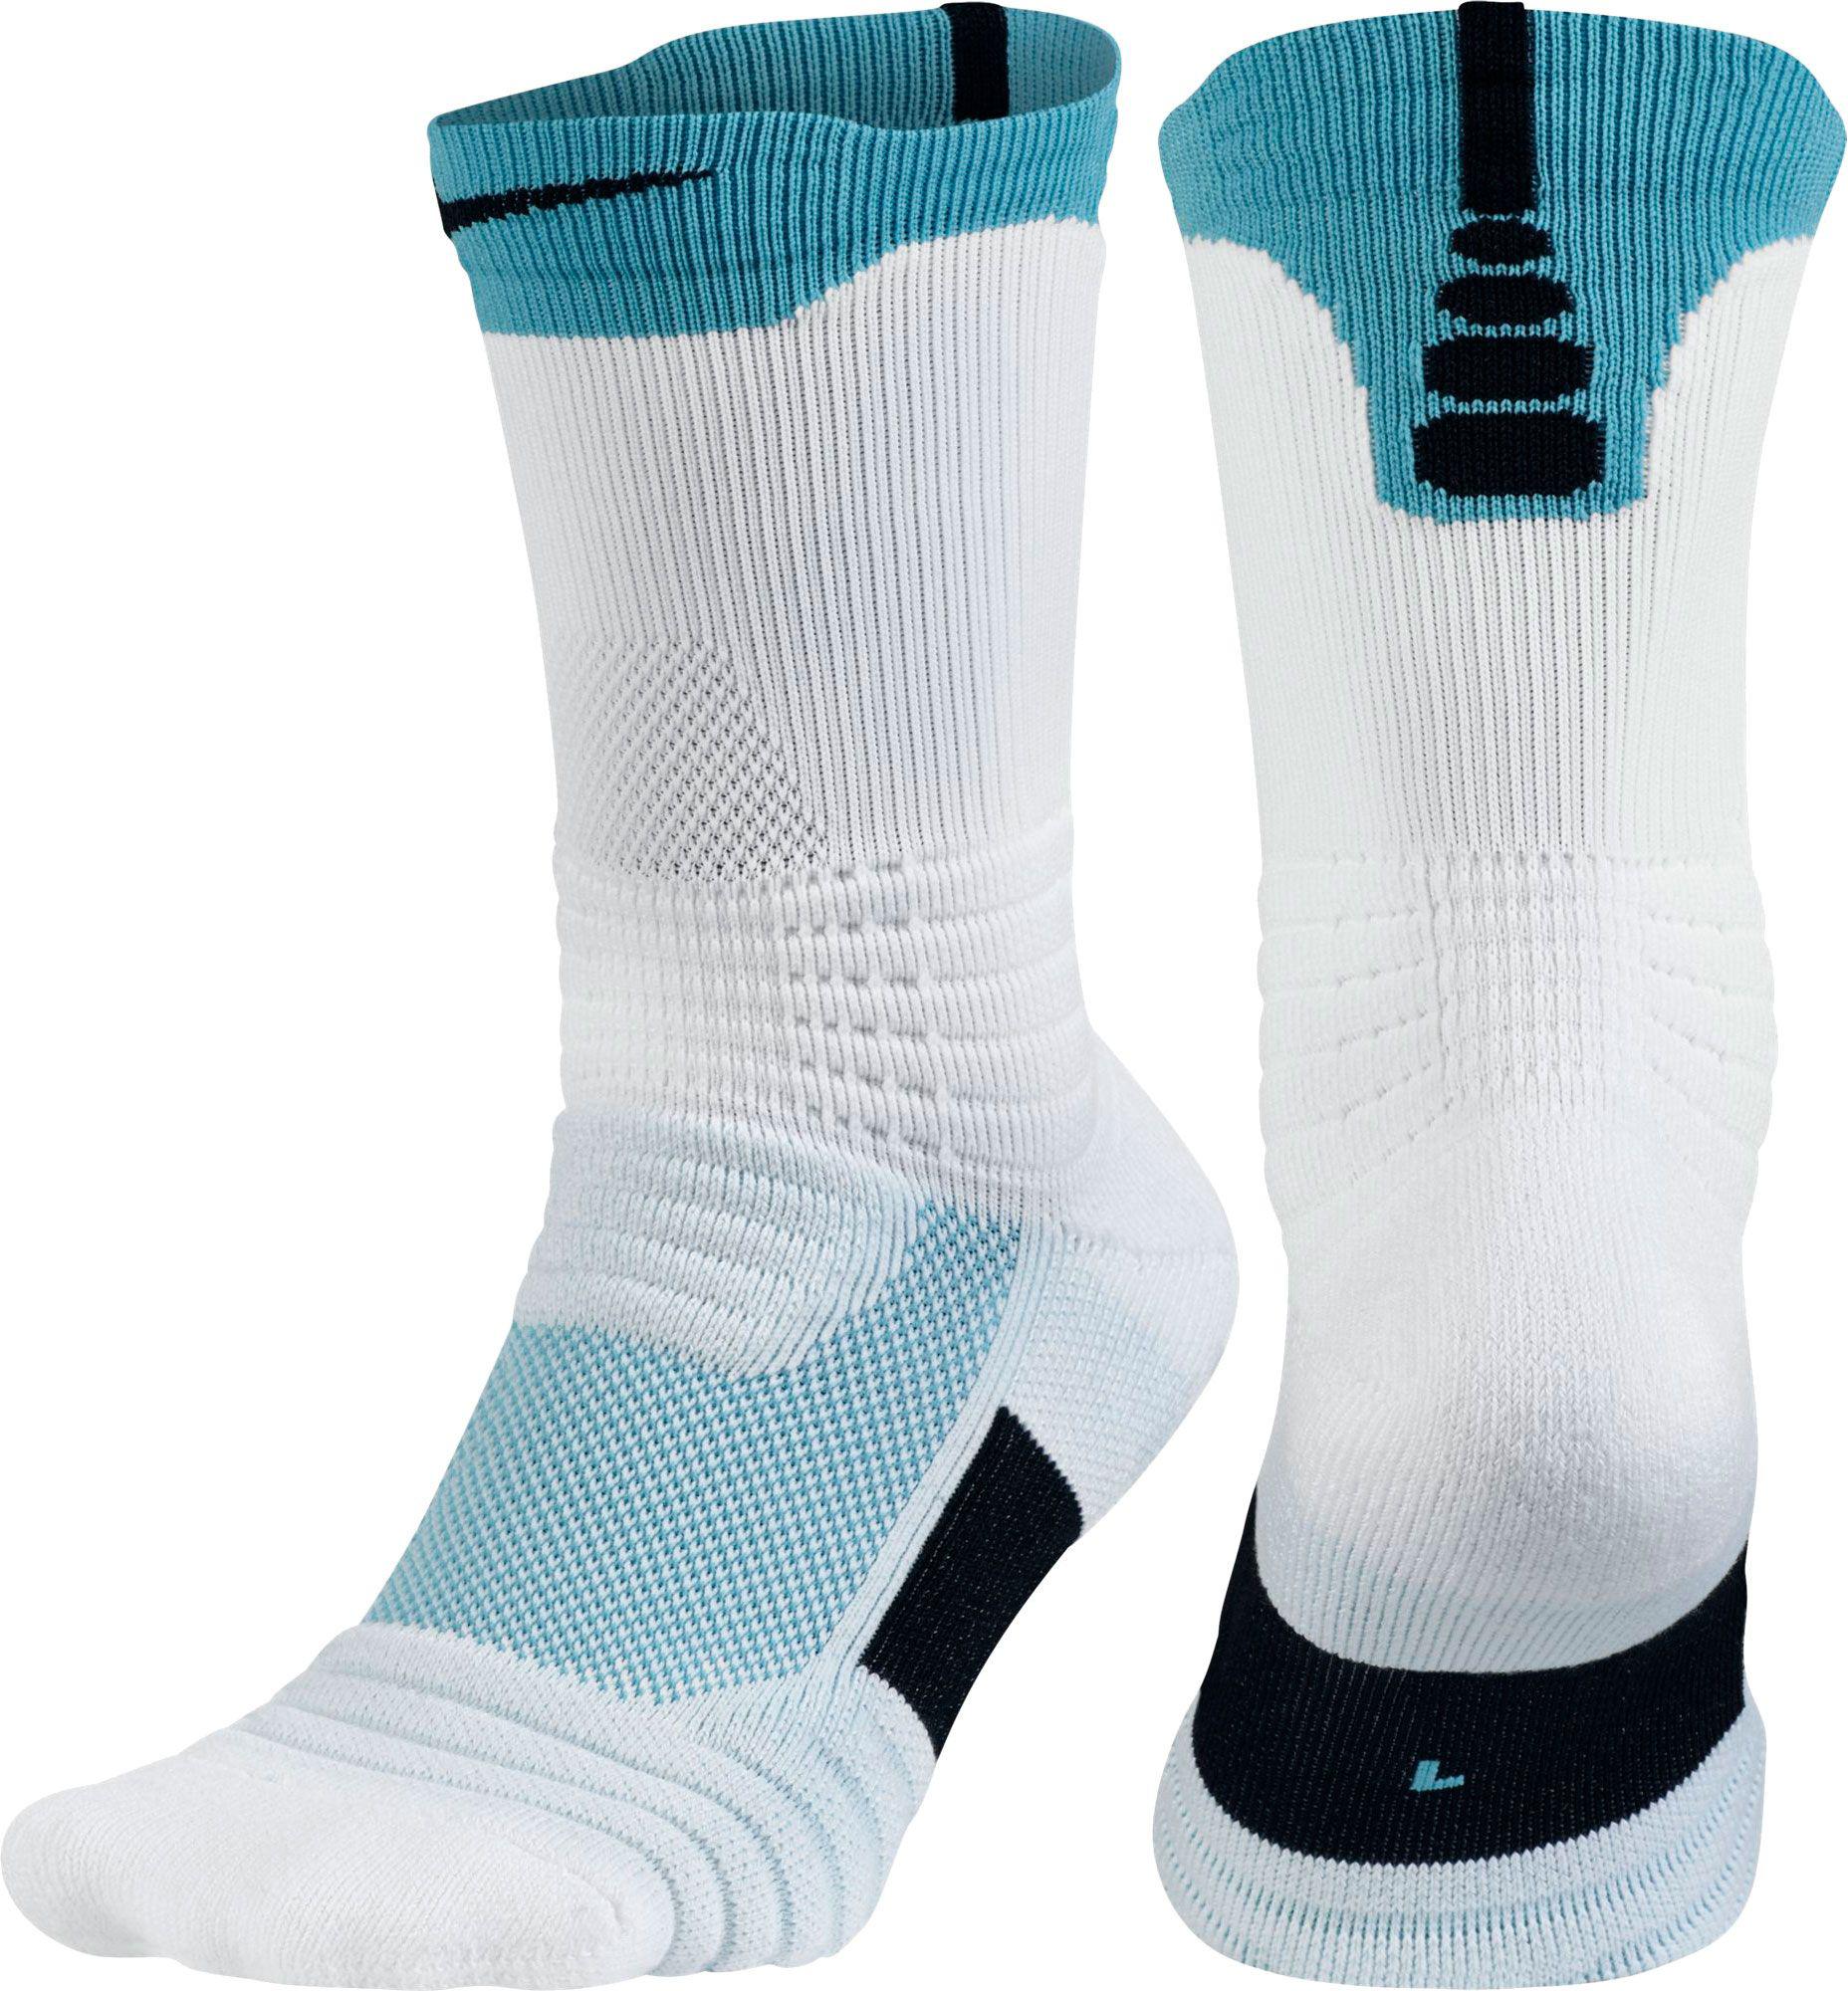 Nike Synthetic Elite Versatility Crew Basketball Socks in Blue for Men